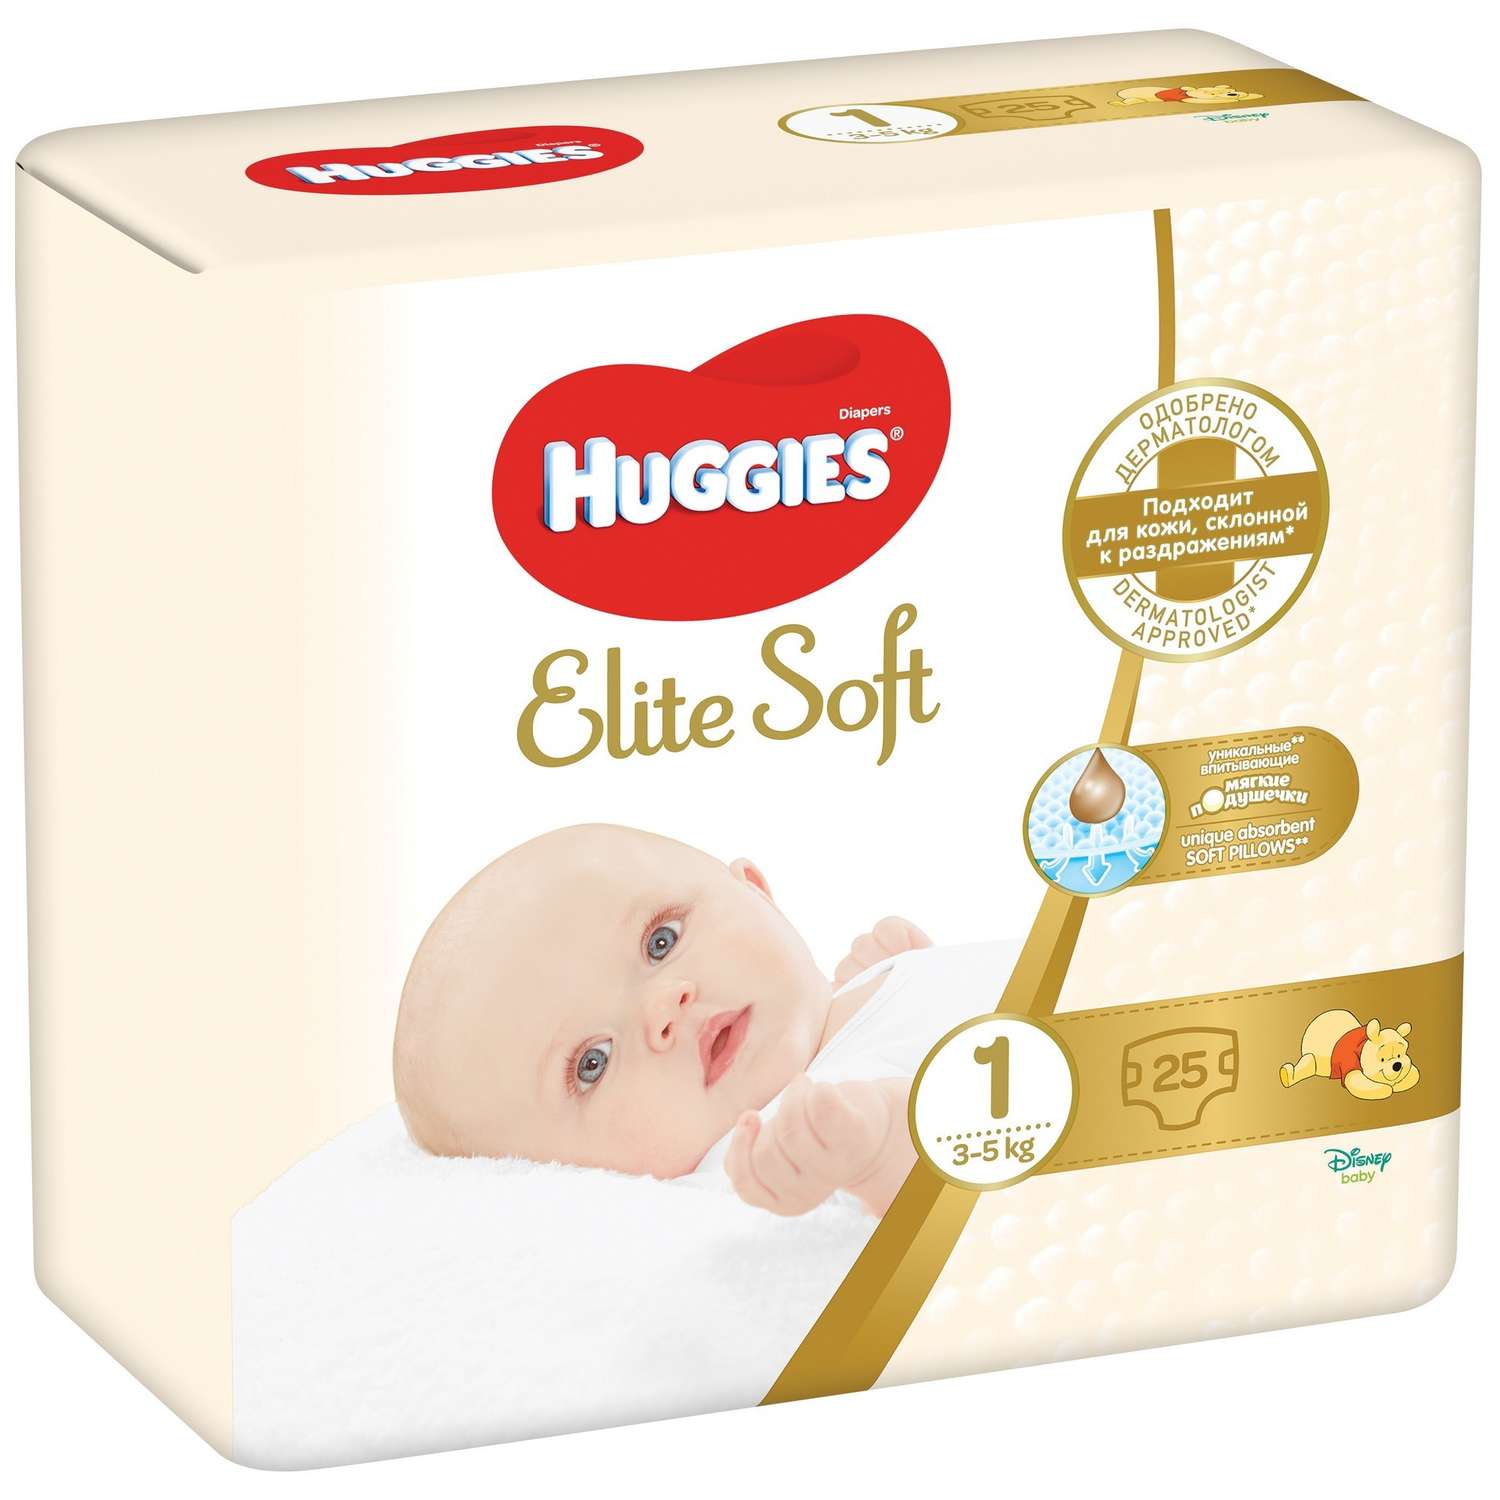 Подгузники Huggies Elite Soft для новорожденных 1 3-5кг 25шт - фото 2